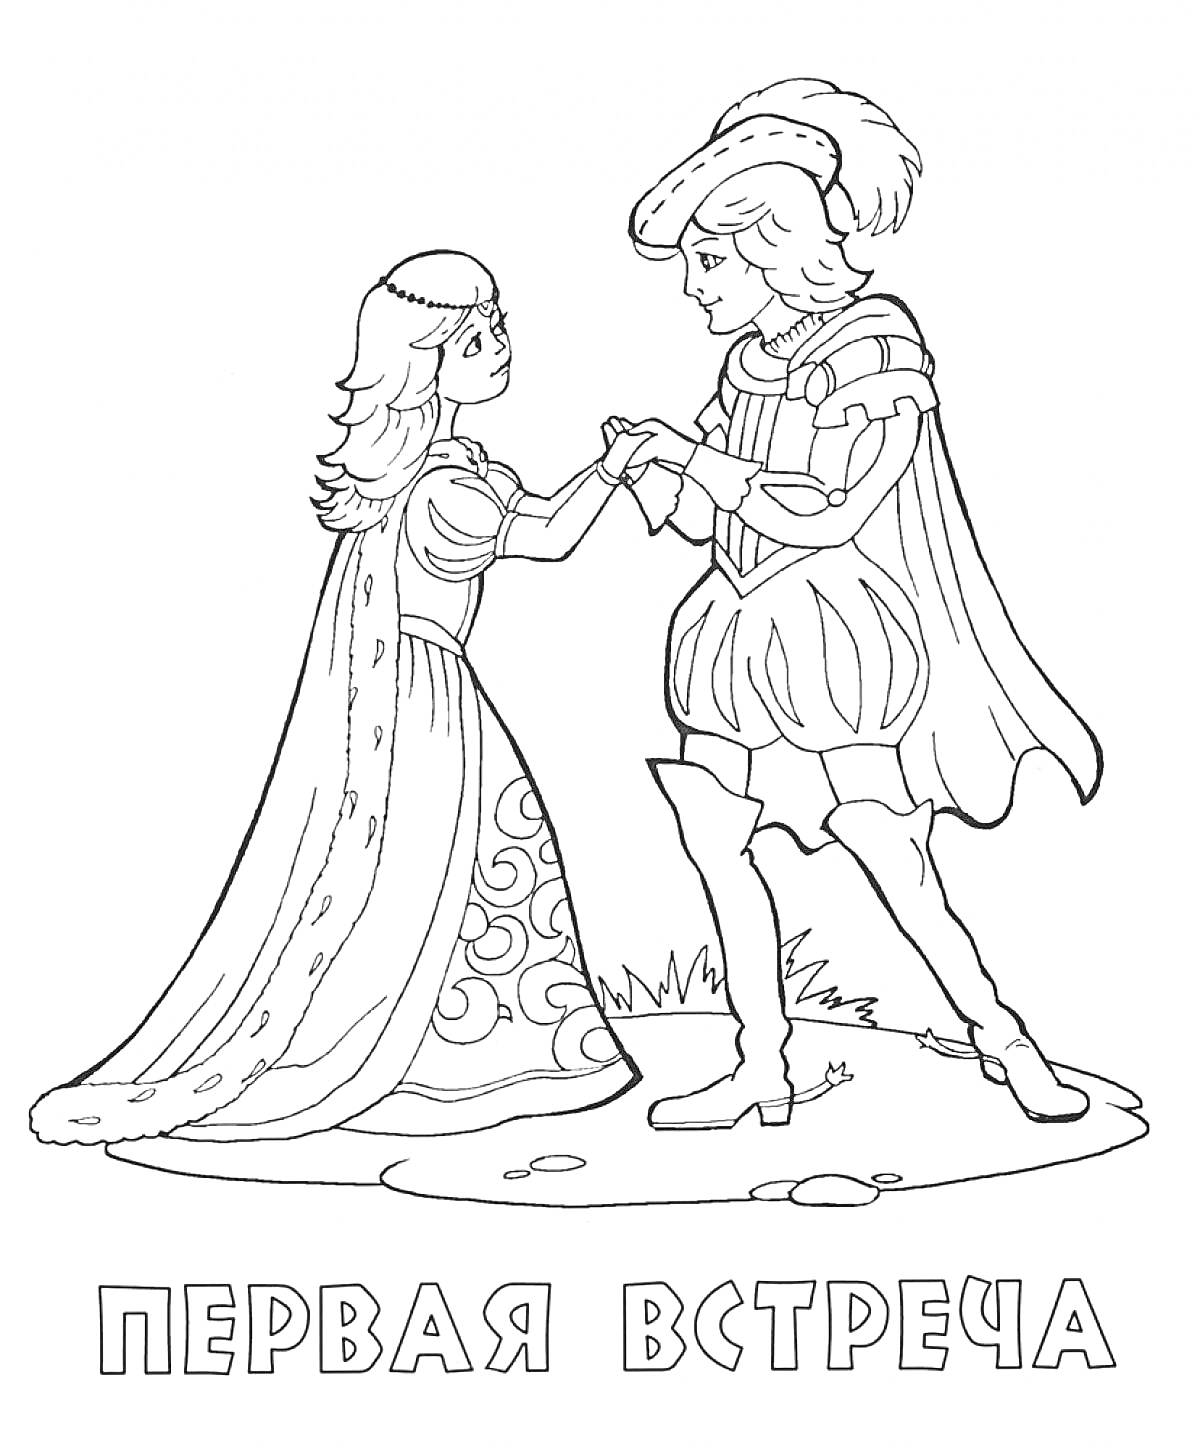 Раскраска Первая встреча принца и принцессы, принц держит за руку принцессу, принц и принцесса одеты в праздничные наряды, фон: трава и камни.